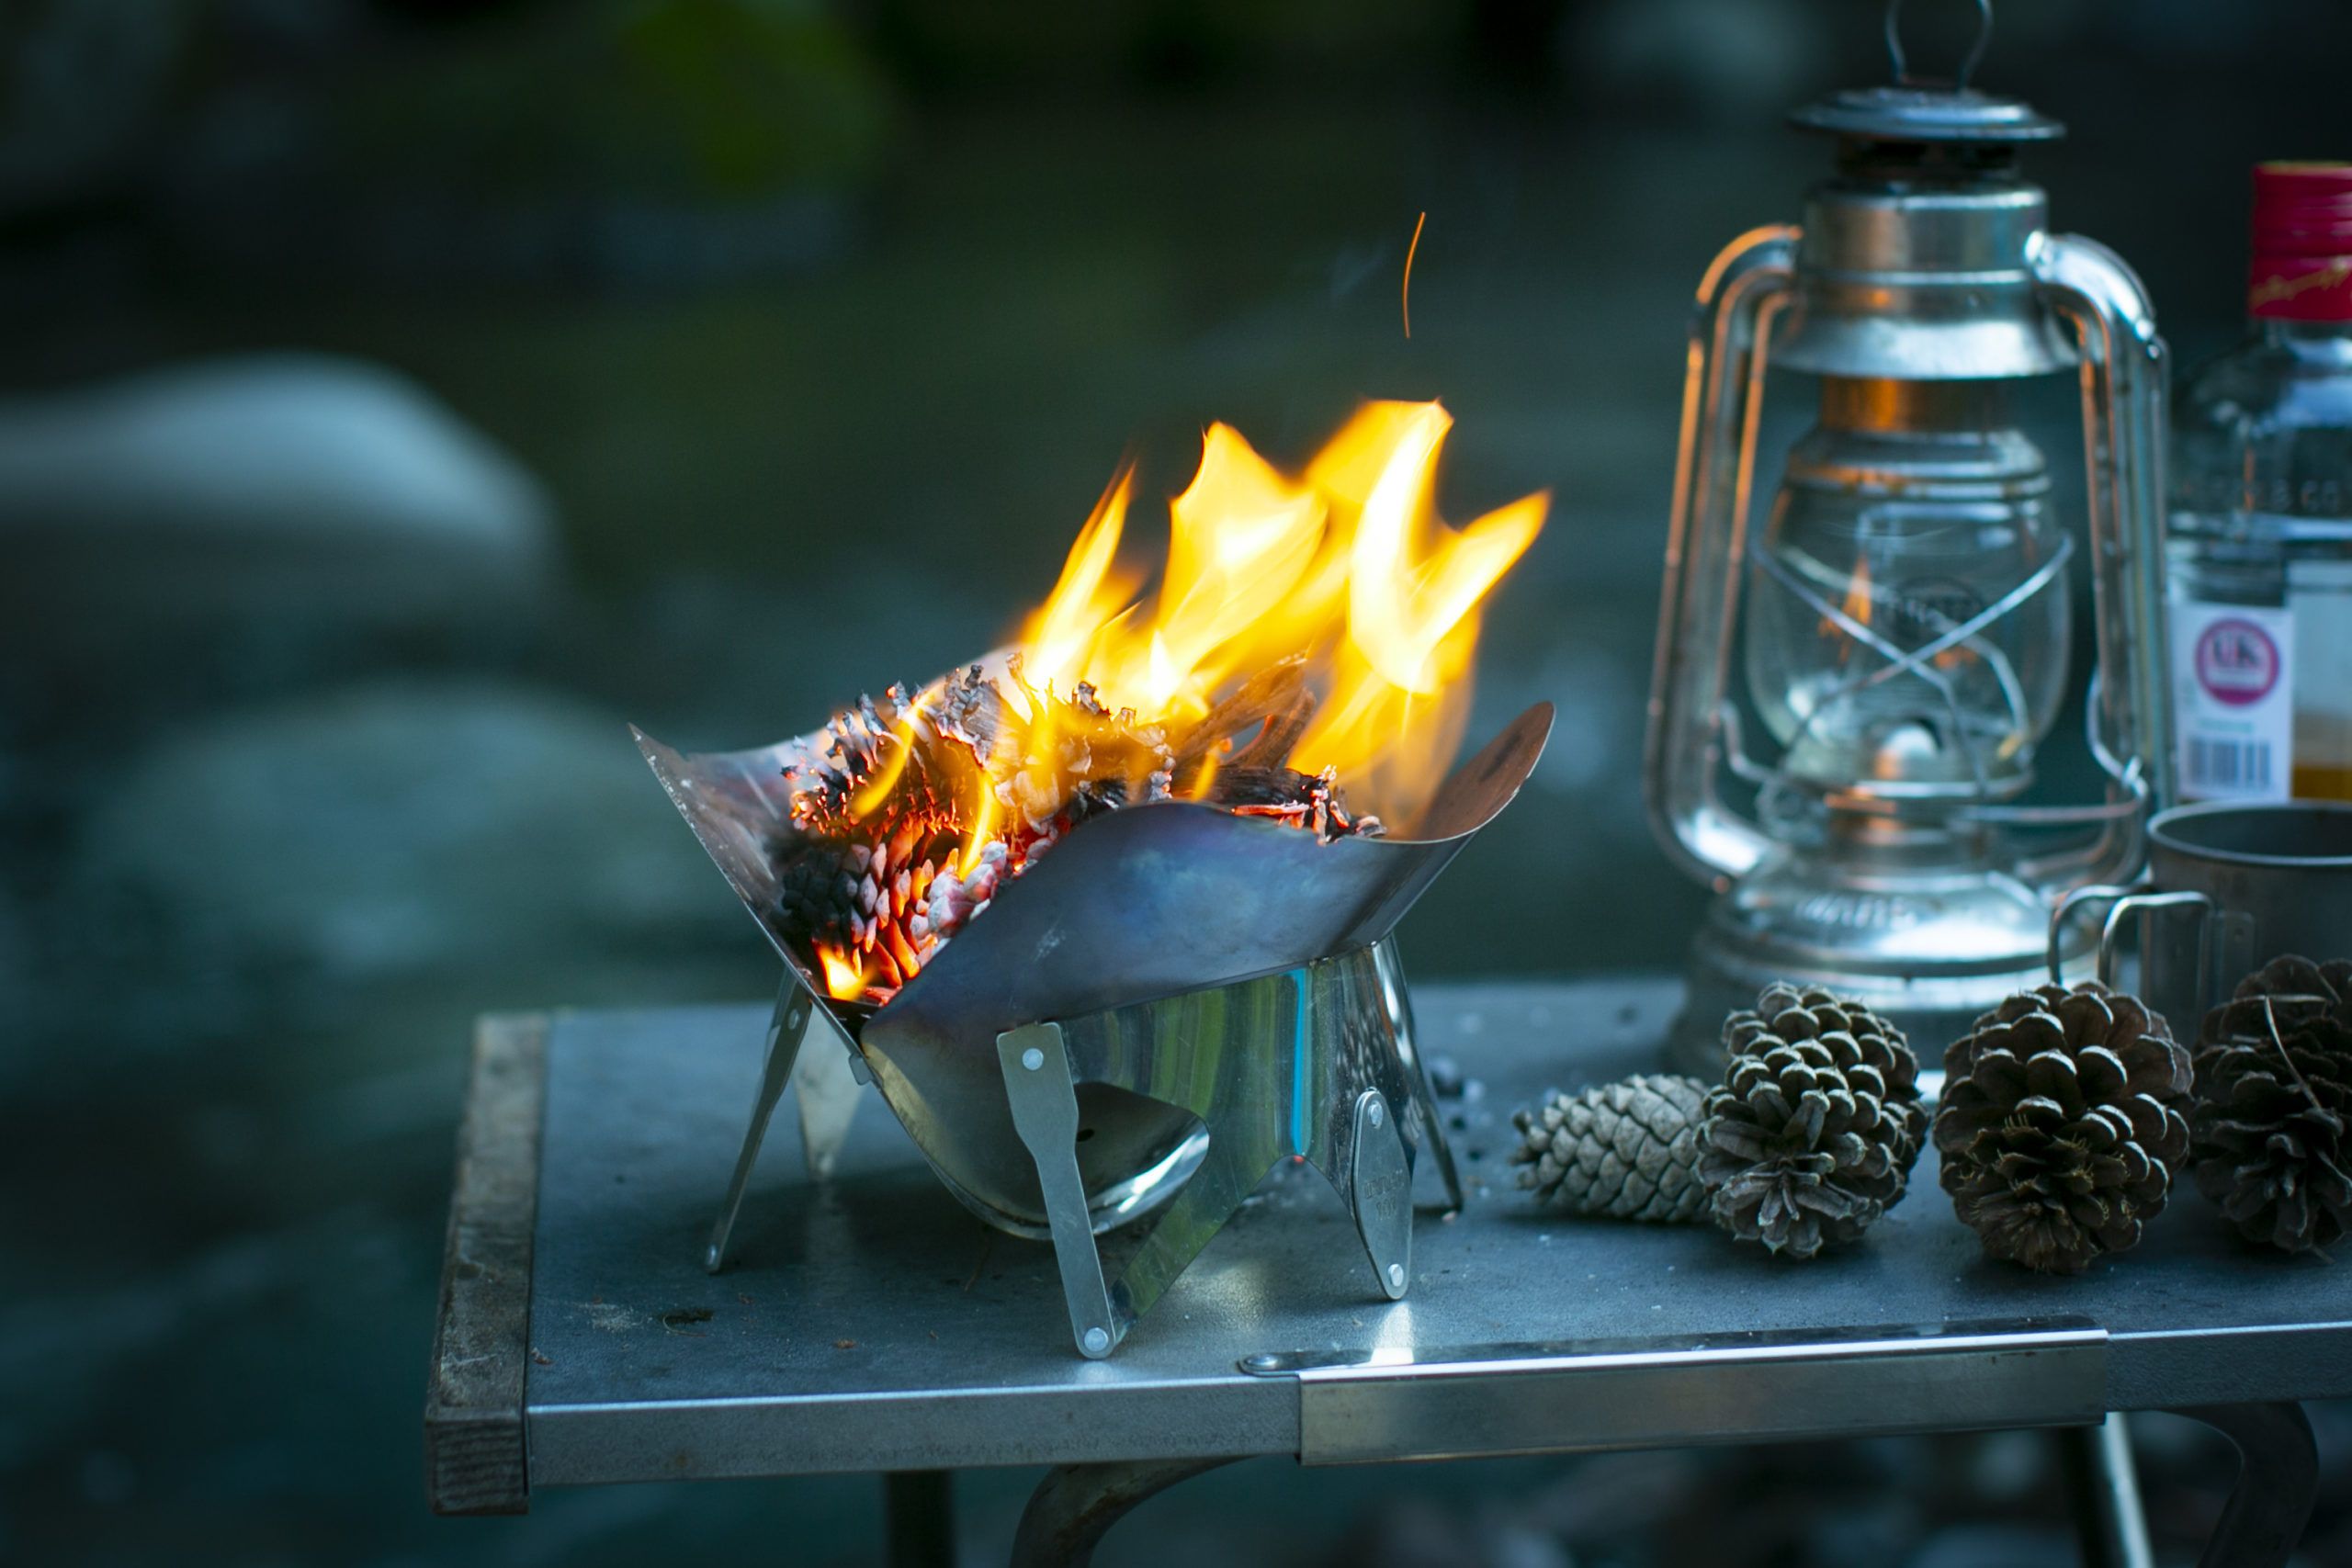 あなたのキャンプサイトに焚き火台『IRORI101』で炎の華を咲かせてみませんか♬